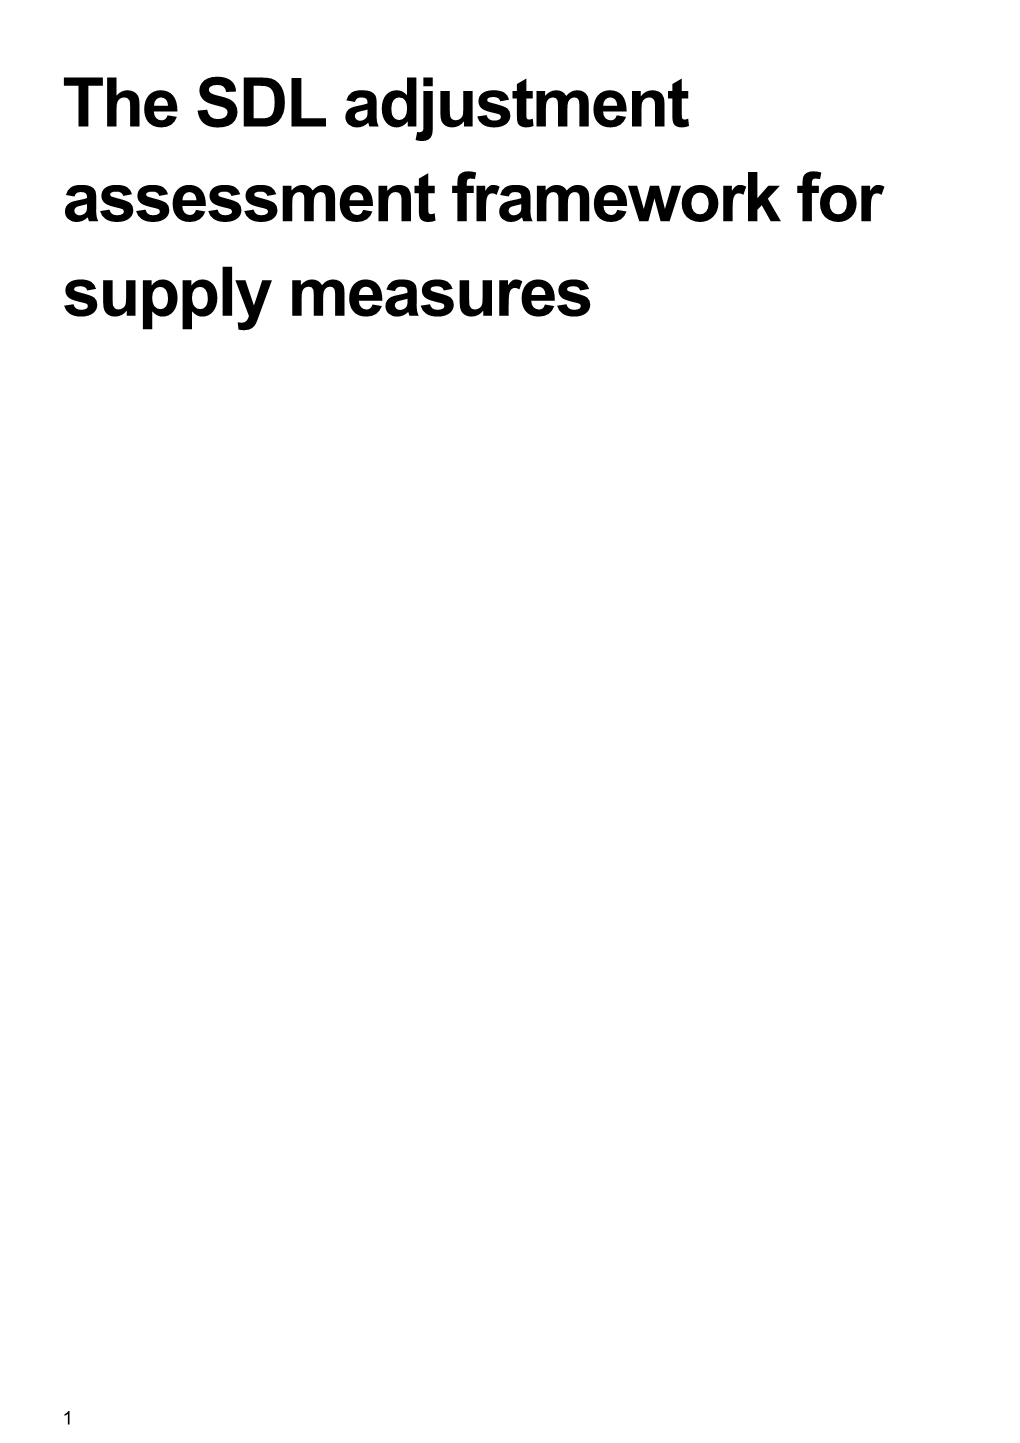 The SDL Adjustment Assessment Framework for Supply Measures